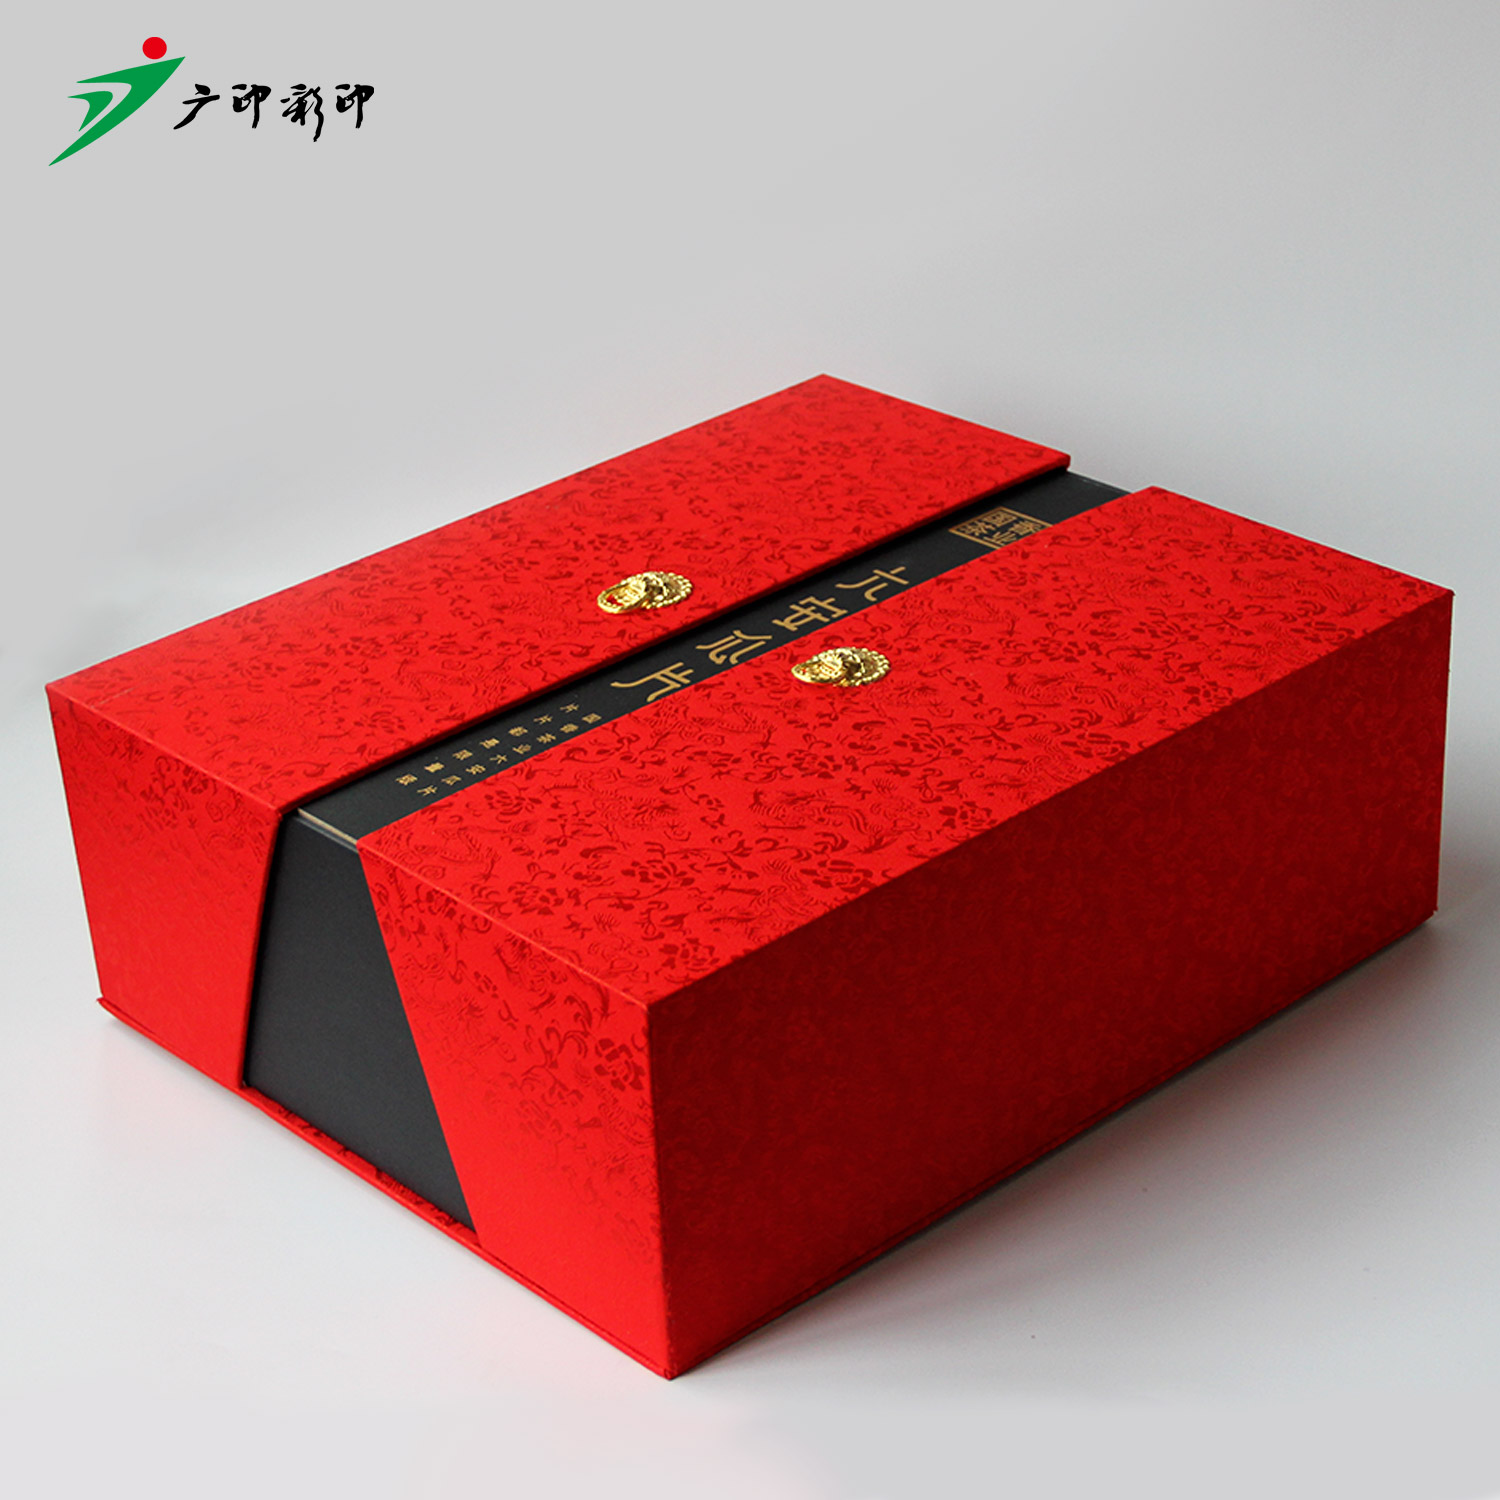 广印——食品包装盒的设计要求你知道么?